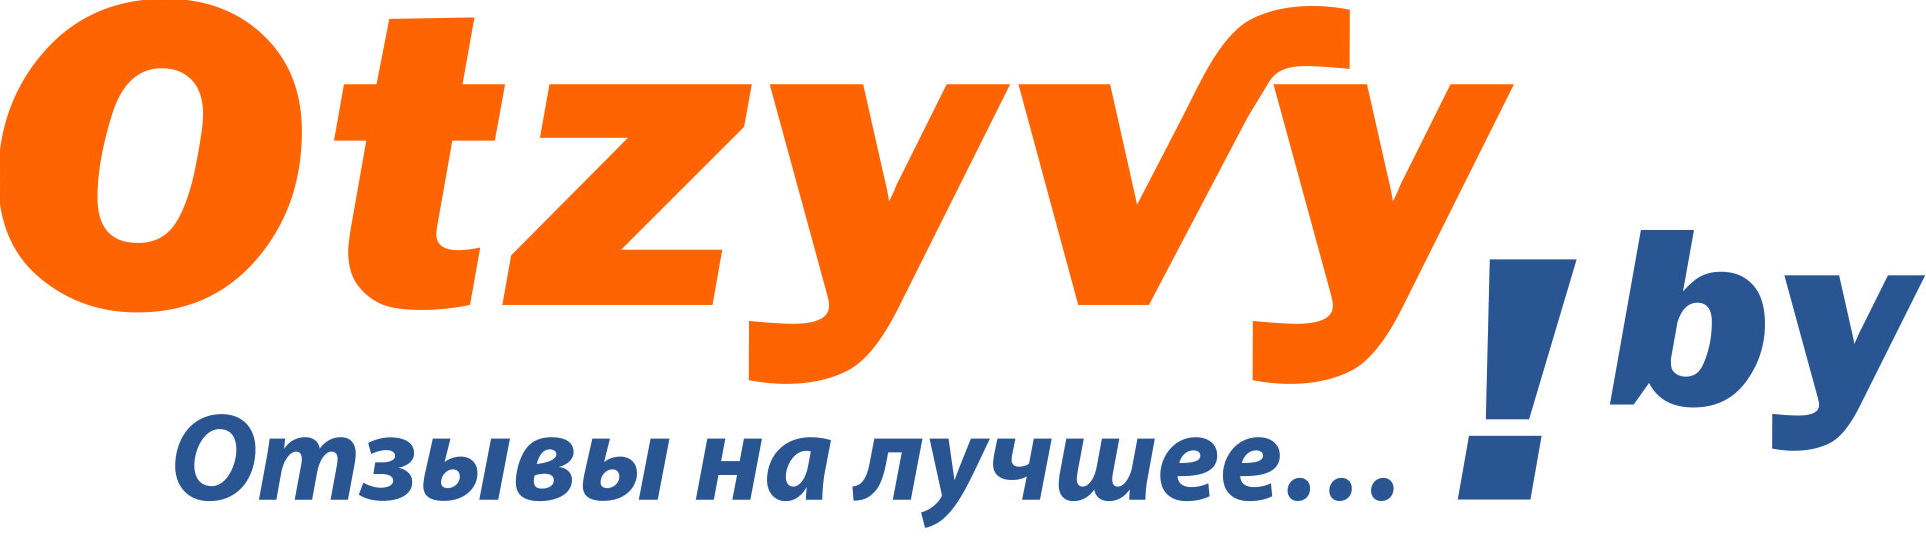 Otzyvy.by – портал отзывов и рекомендаций